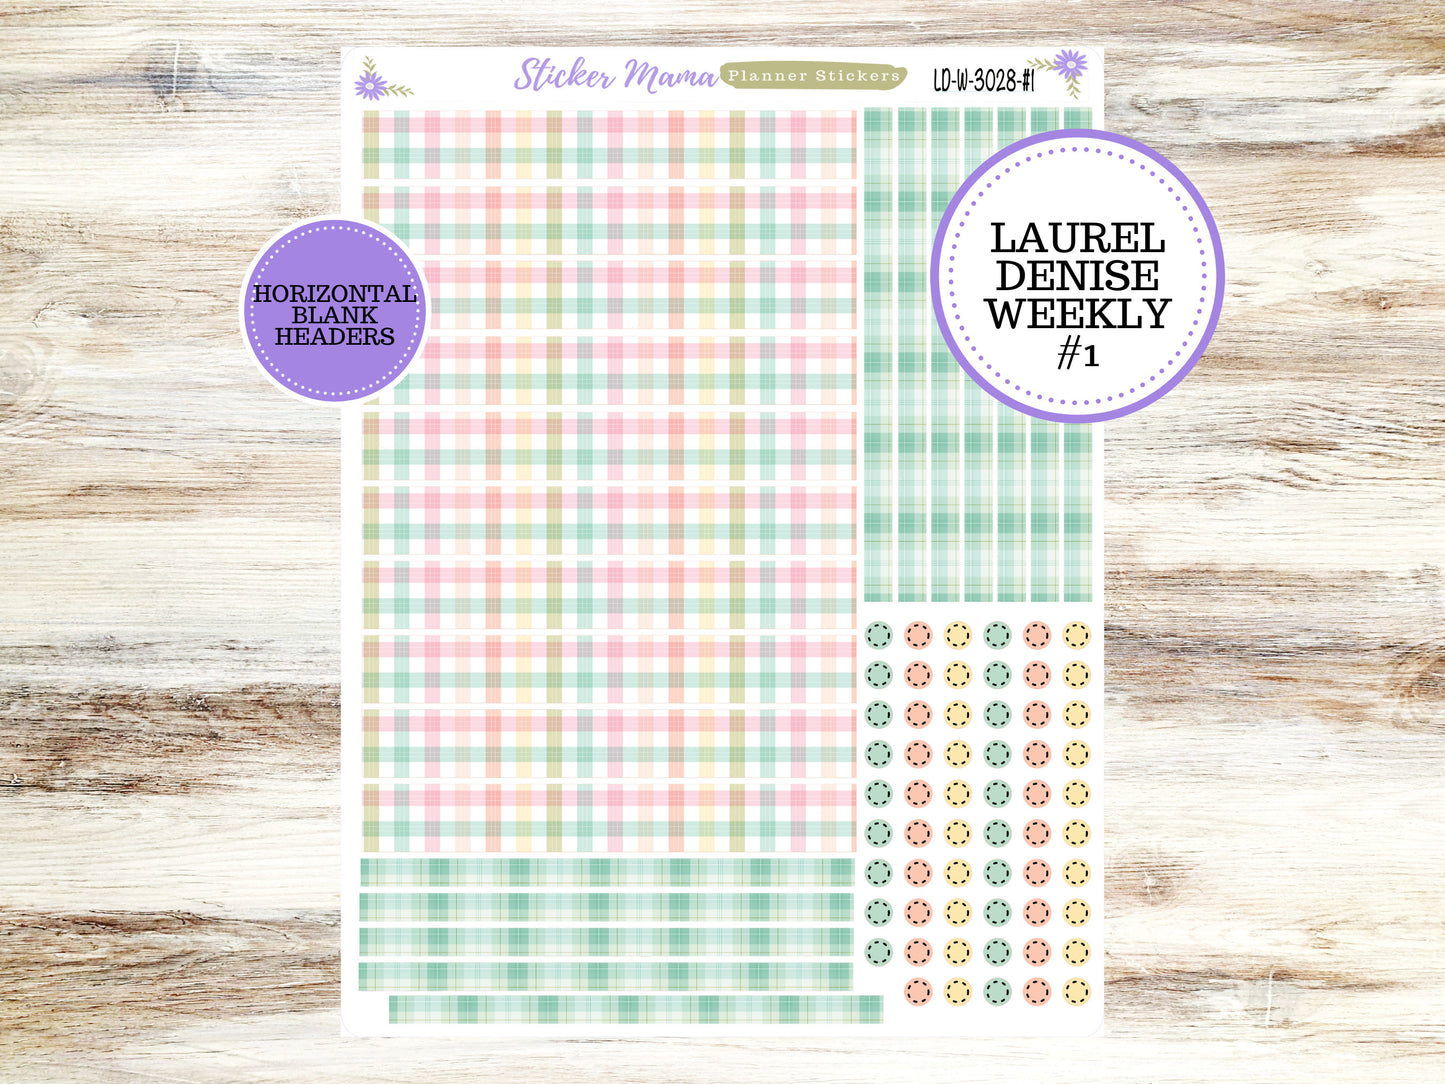 LAUREL DENISE PLANNER Kit #3028 || Laurel Denise Kit || Laurel Denise Stickers